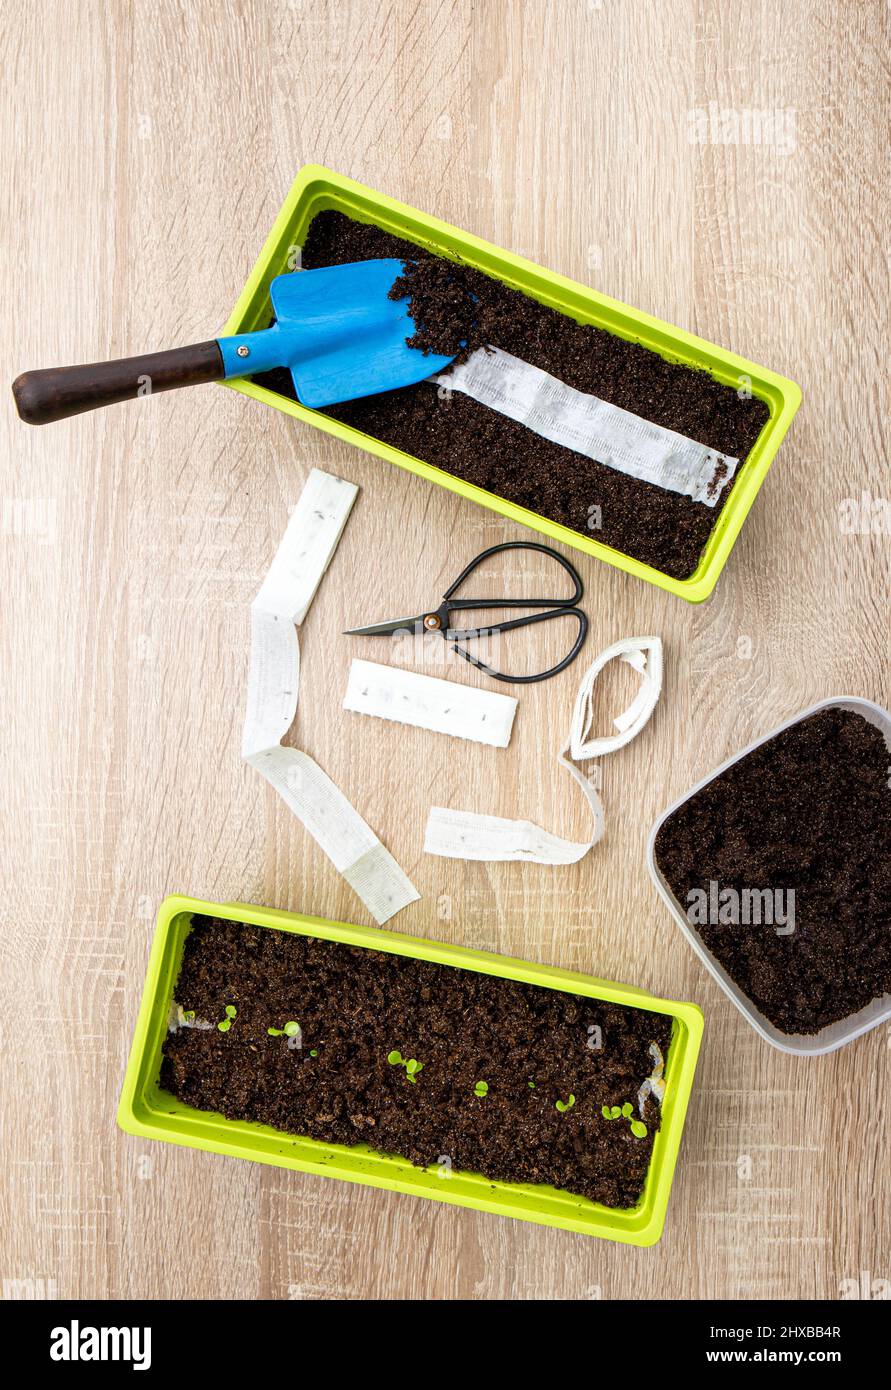 Salatpflanzen werden im Frühjahr zu Hause aus weißem Papiersamenband gepflanzt, in dem sich Samen befinden. Schnelle und einfache Möglichkeit, kleine Samen zu säen. Stockfoto